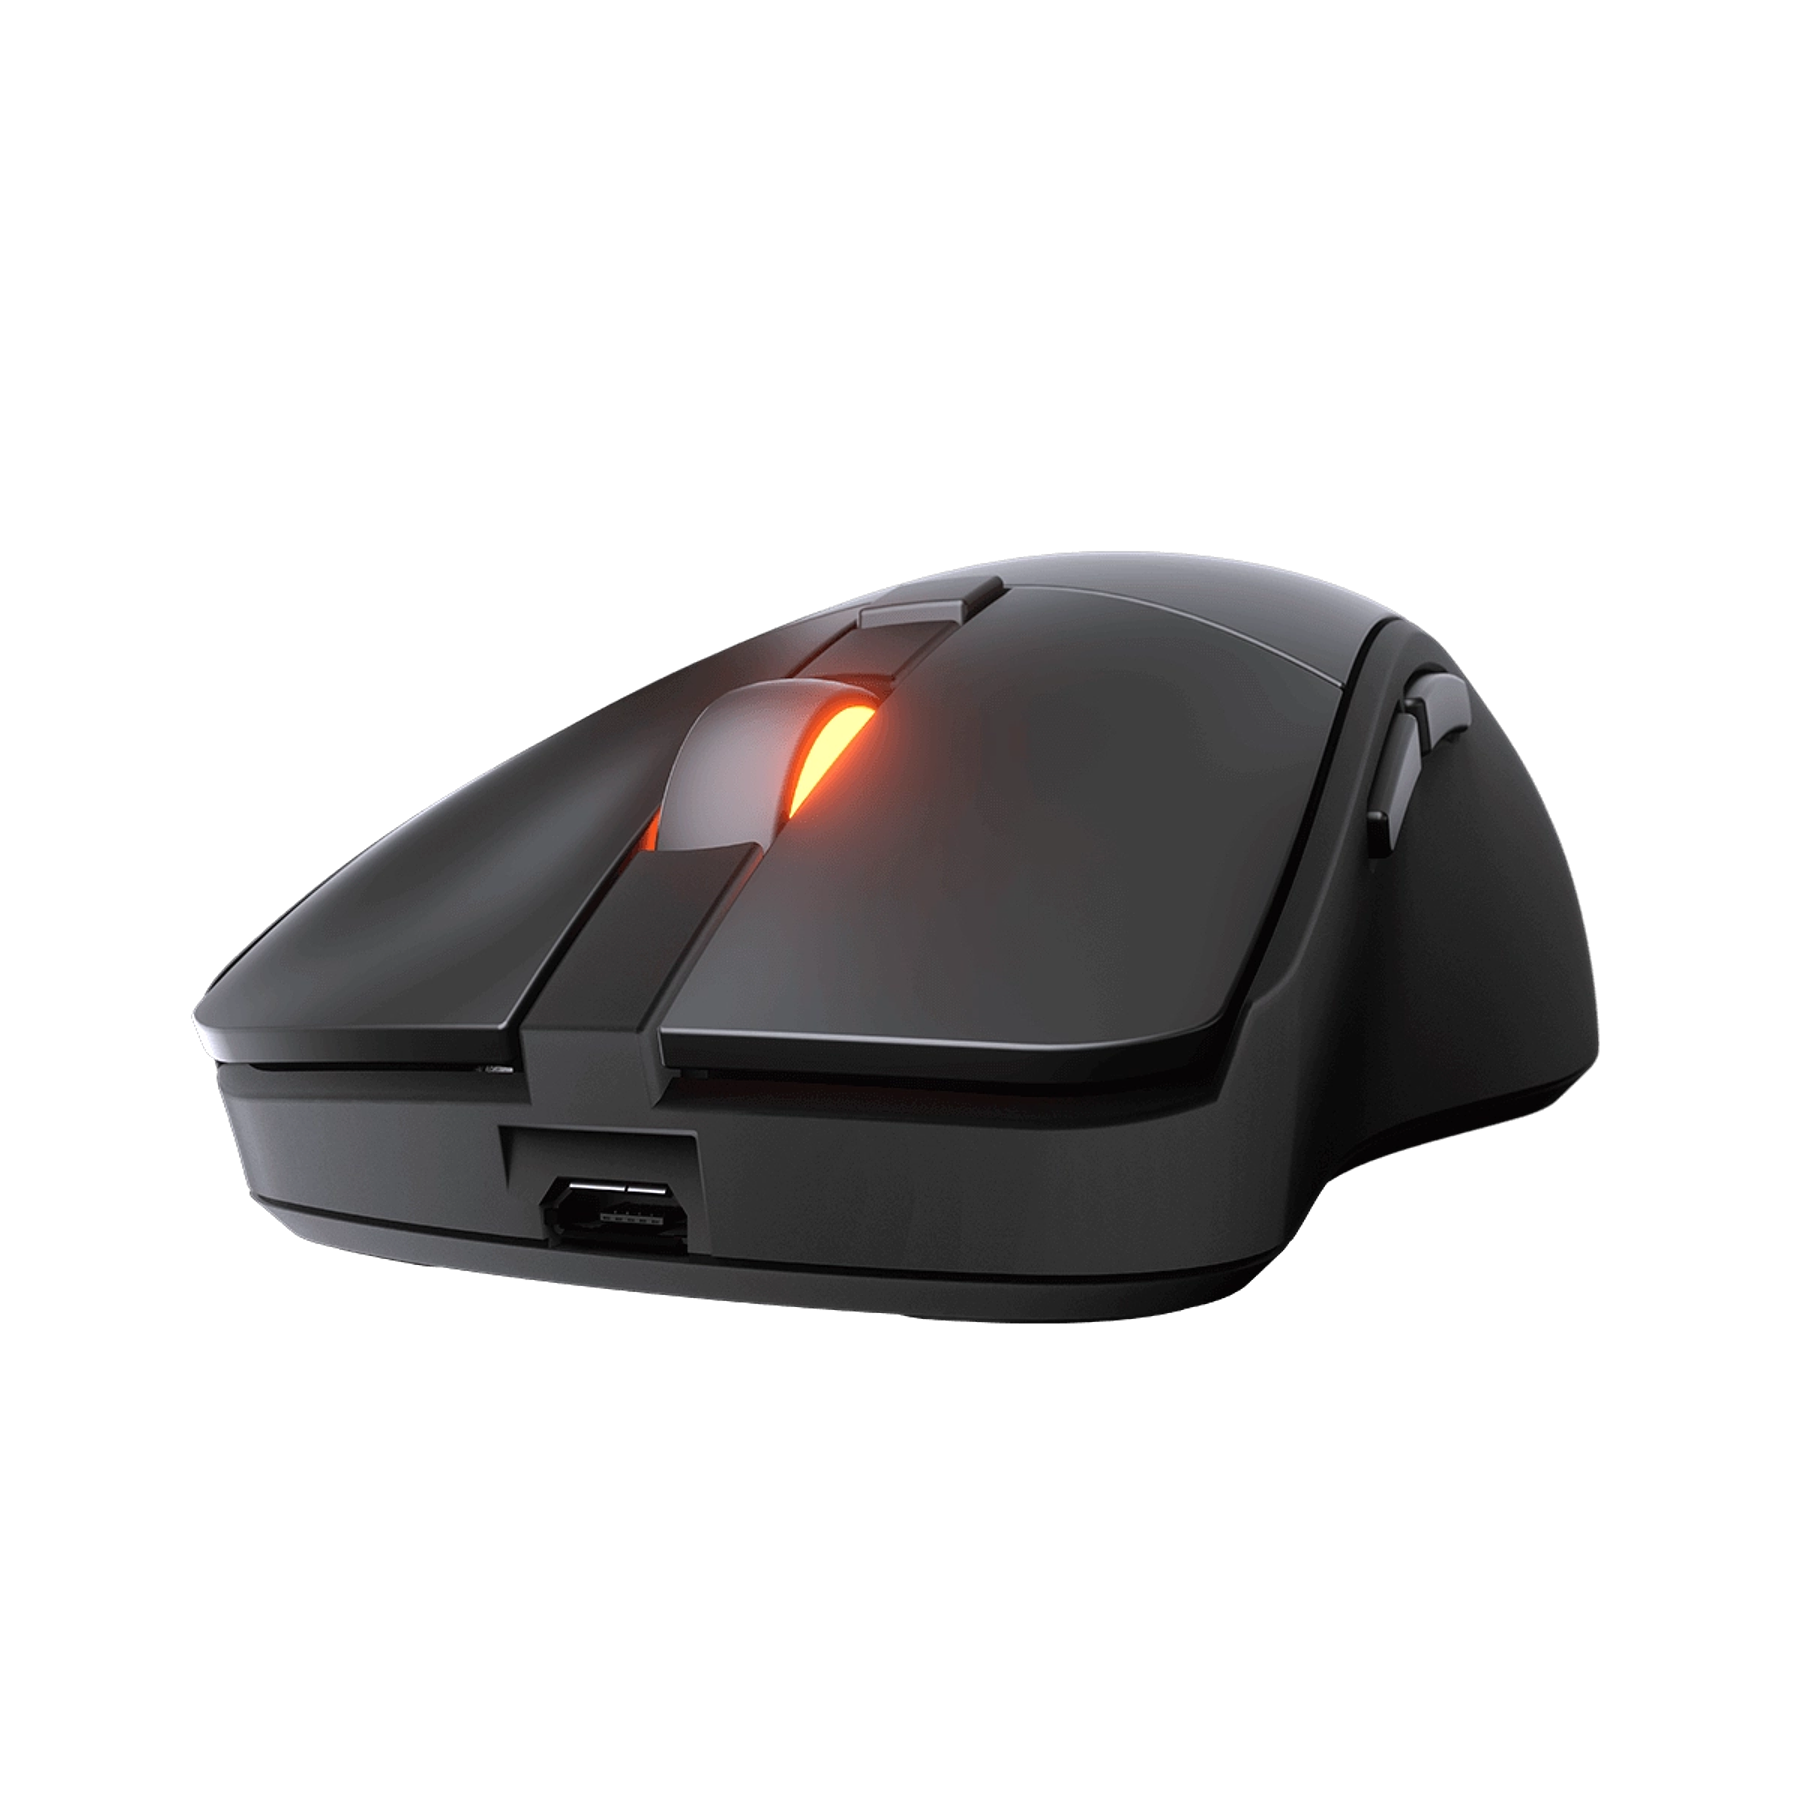 Mouse Gamer Surpassion RX 7200 DPI